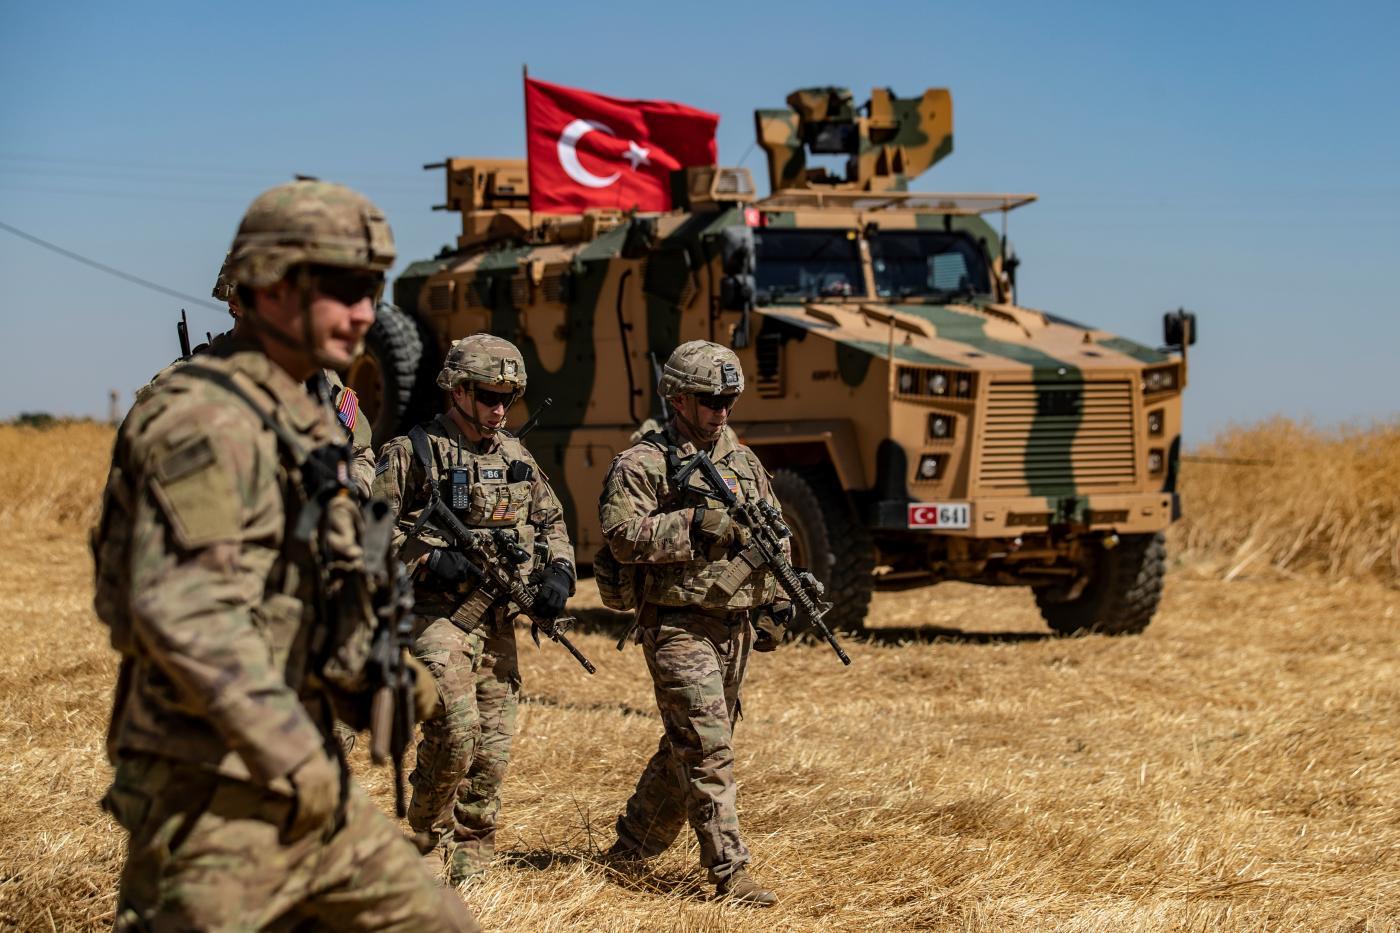 Спецназ Турции нейтрализовал 4 террористов на севере Сирии